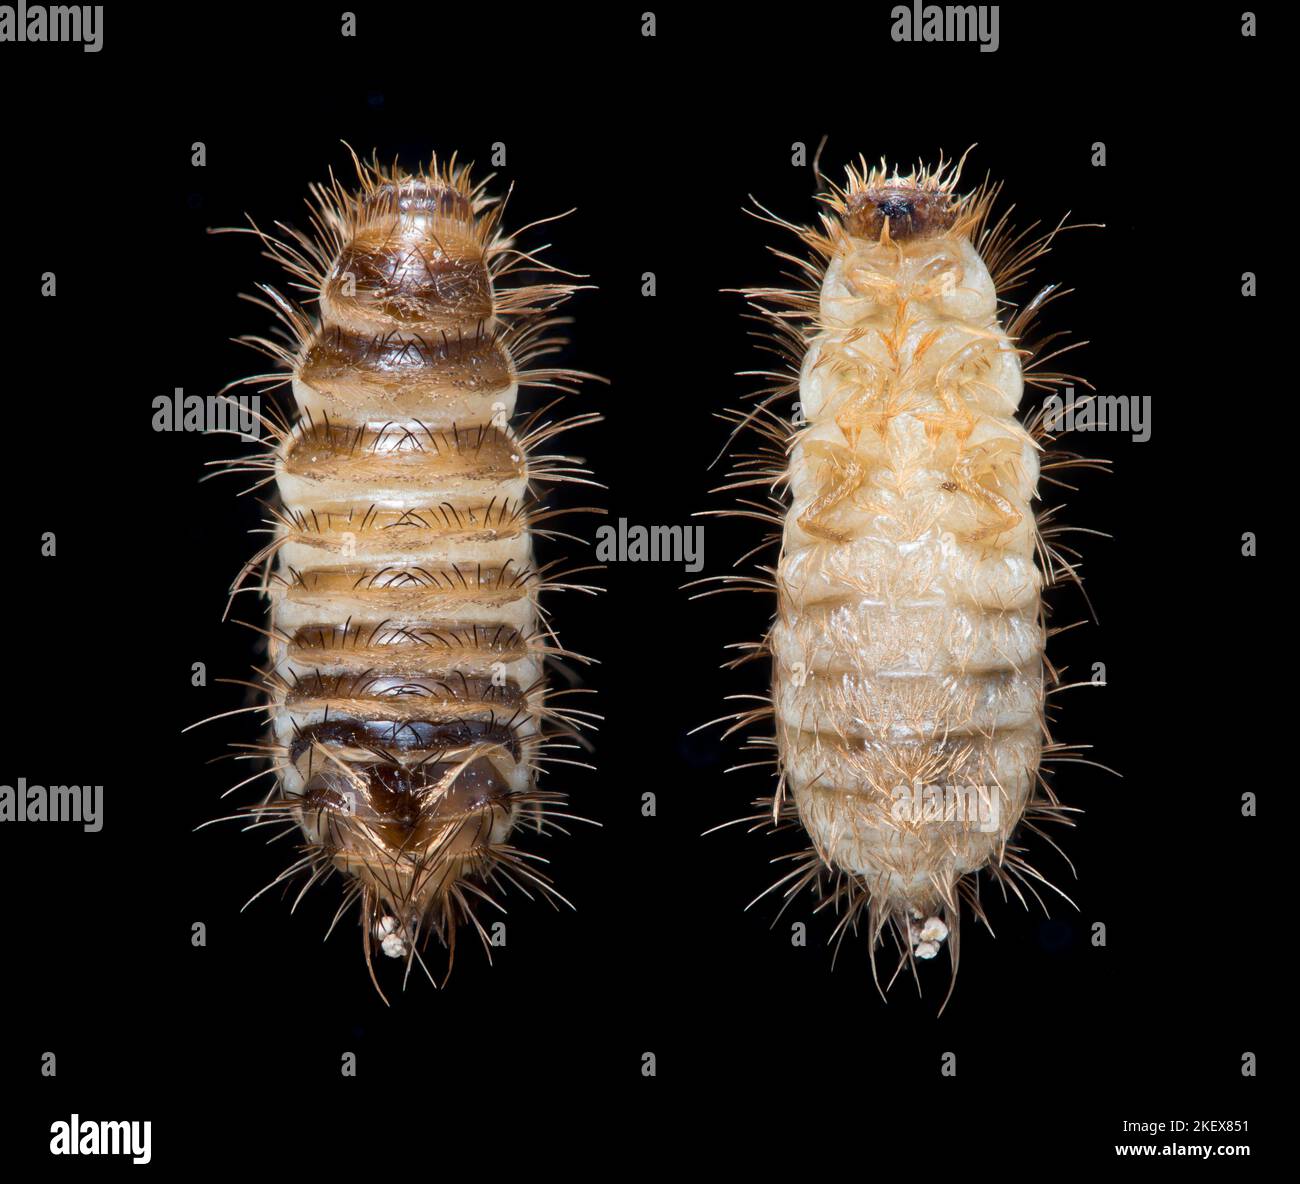 Alfombra Escarabajo Larva, dorsal y ventral - Anthrenus fuscus (oso de lana) fotomicrografía del campo oscuro Foto de stock